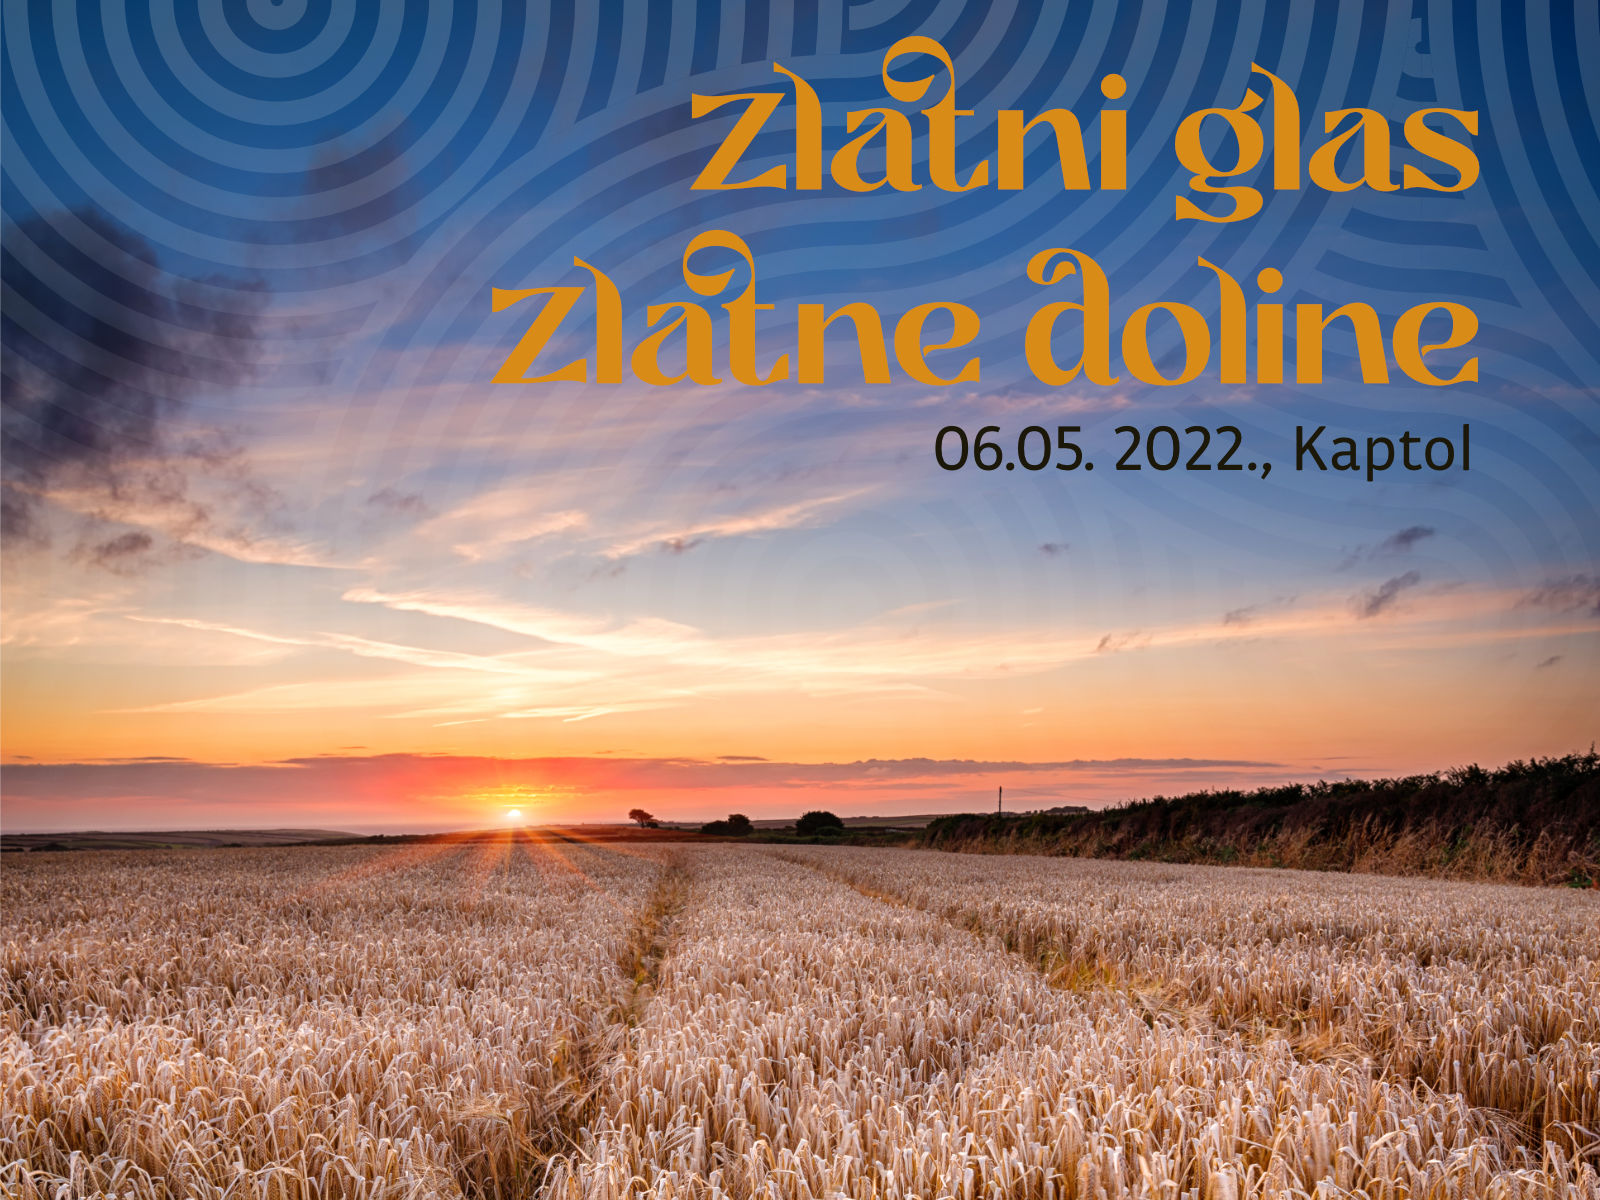 Požega.eu | Poznati sudionici Zlatnog glasa Zlatne doline 2022. koji će biti 6. svibnja